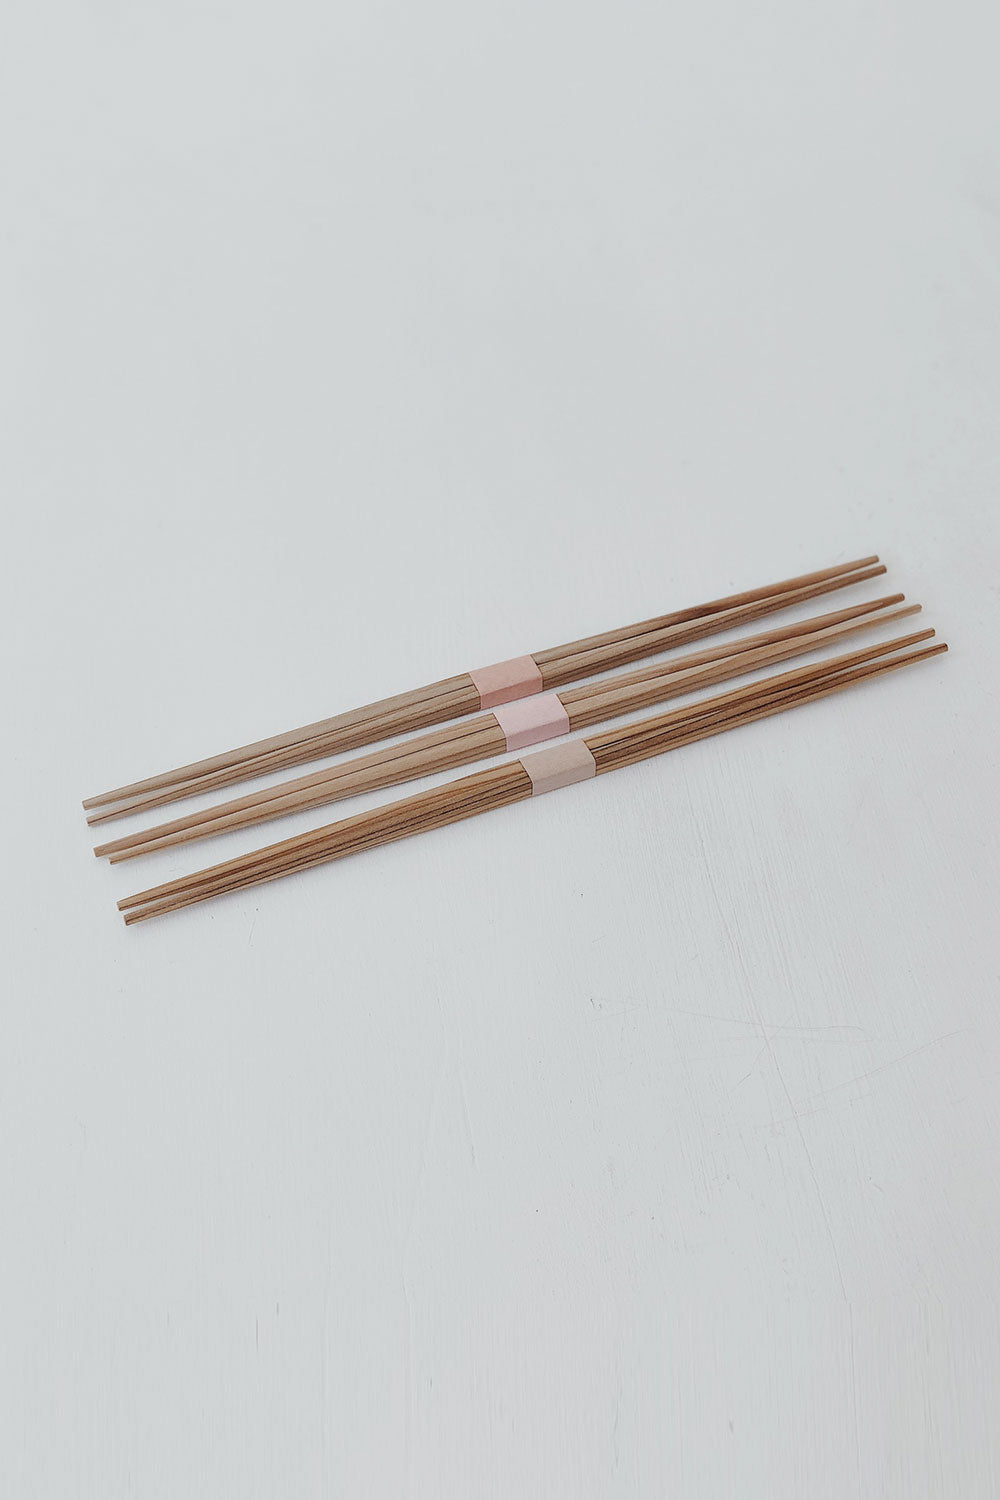 chopsticks online store